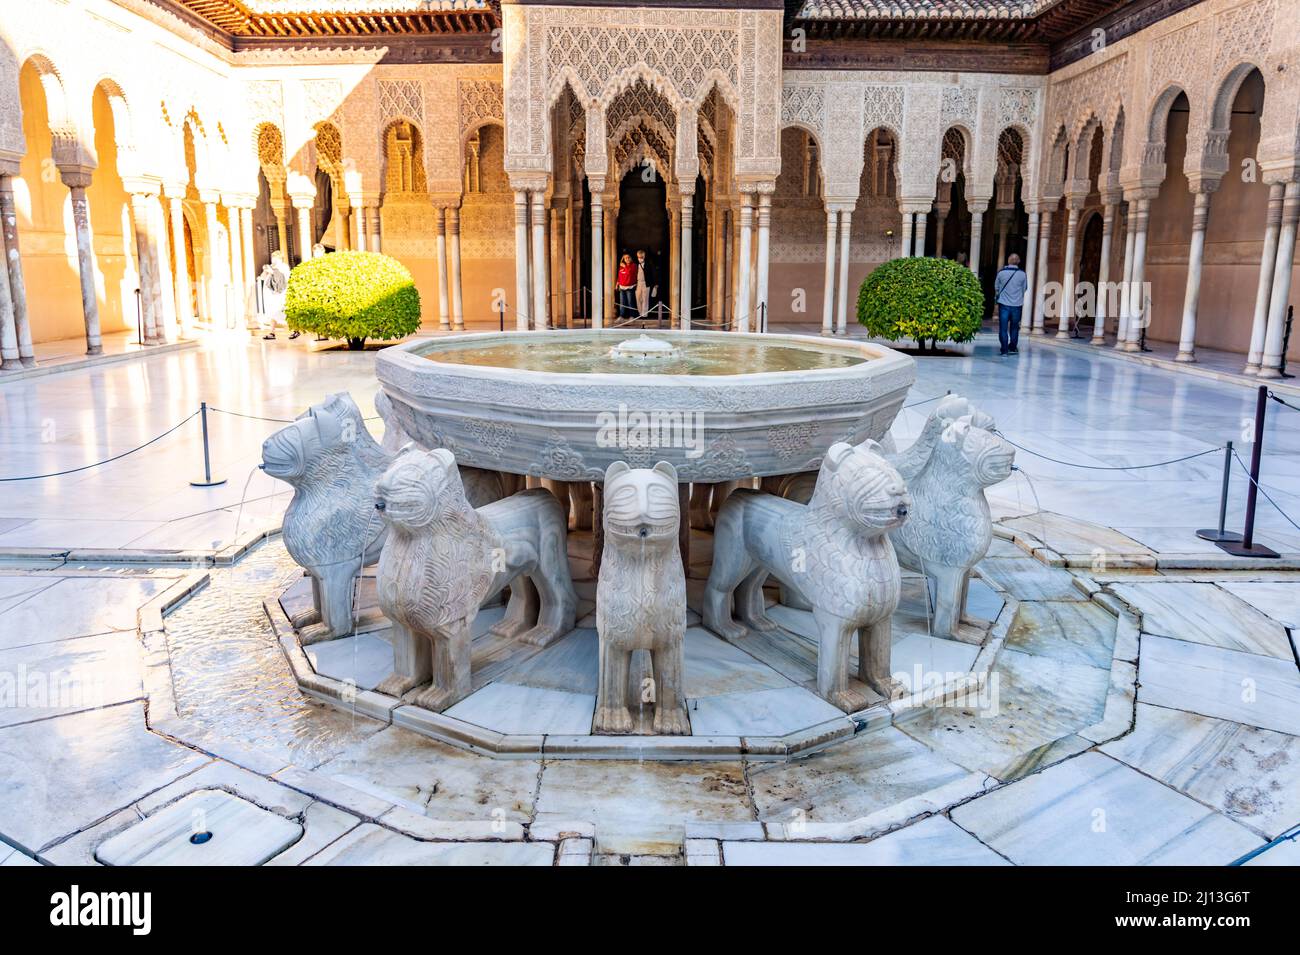 Löwenhof mit dem Löwenbrunnen, Welterbe Alhambra a Granada, Andalusia, spagnolo | Fontana e Corte dei leoni, patrimonio mondiale dell'Alhambra a Grana Foto Stock